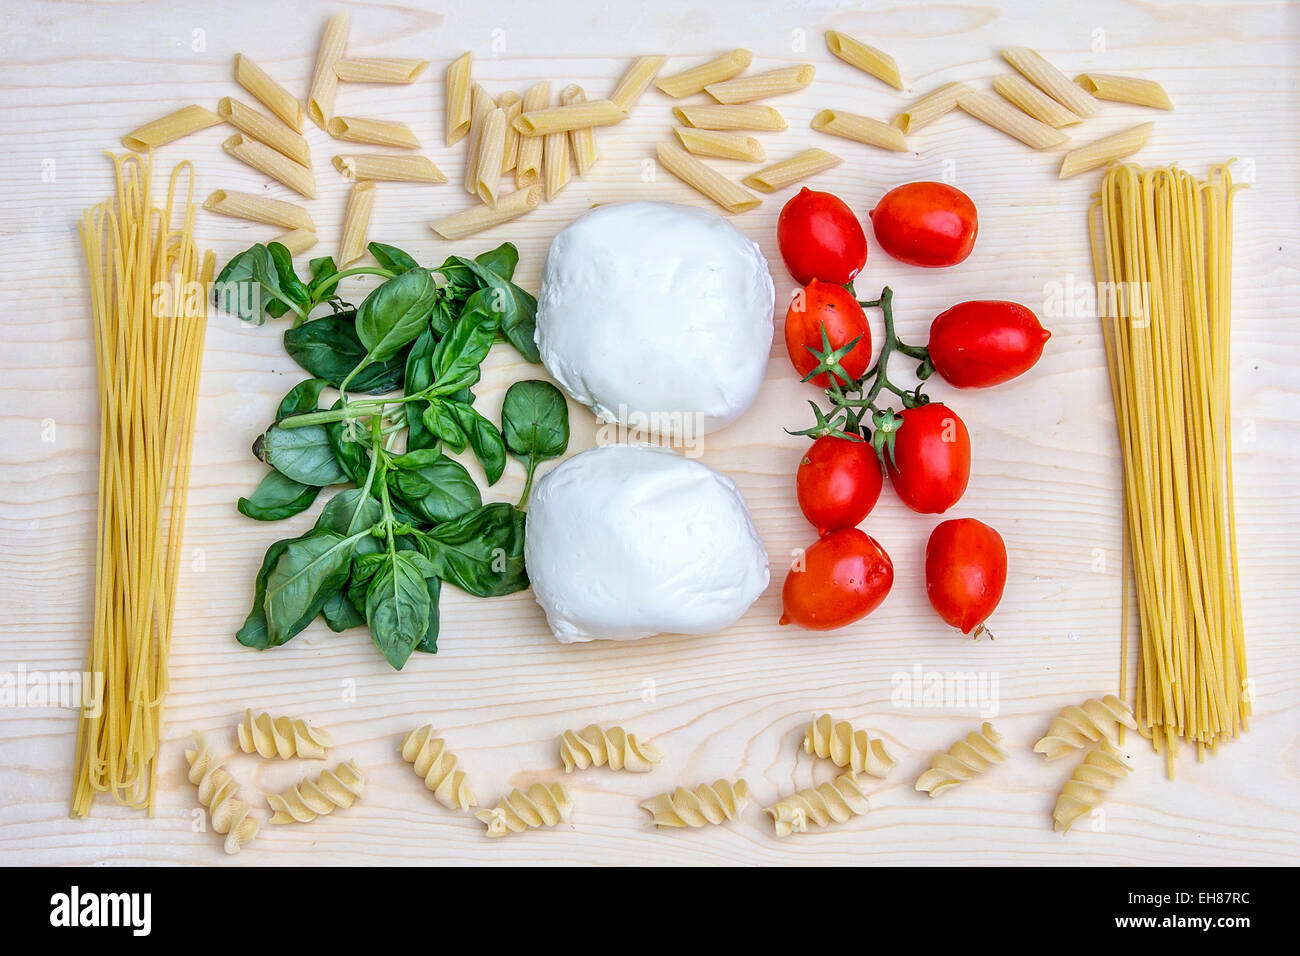 La composition avec les couleurs vives de la cuisine italienne : pâtes, spaghetti Italie Banque D'Images